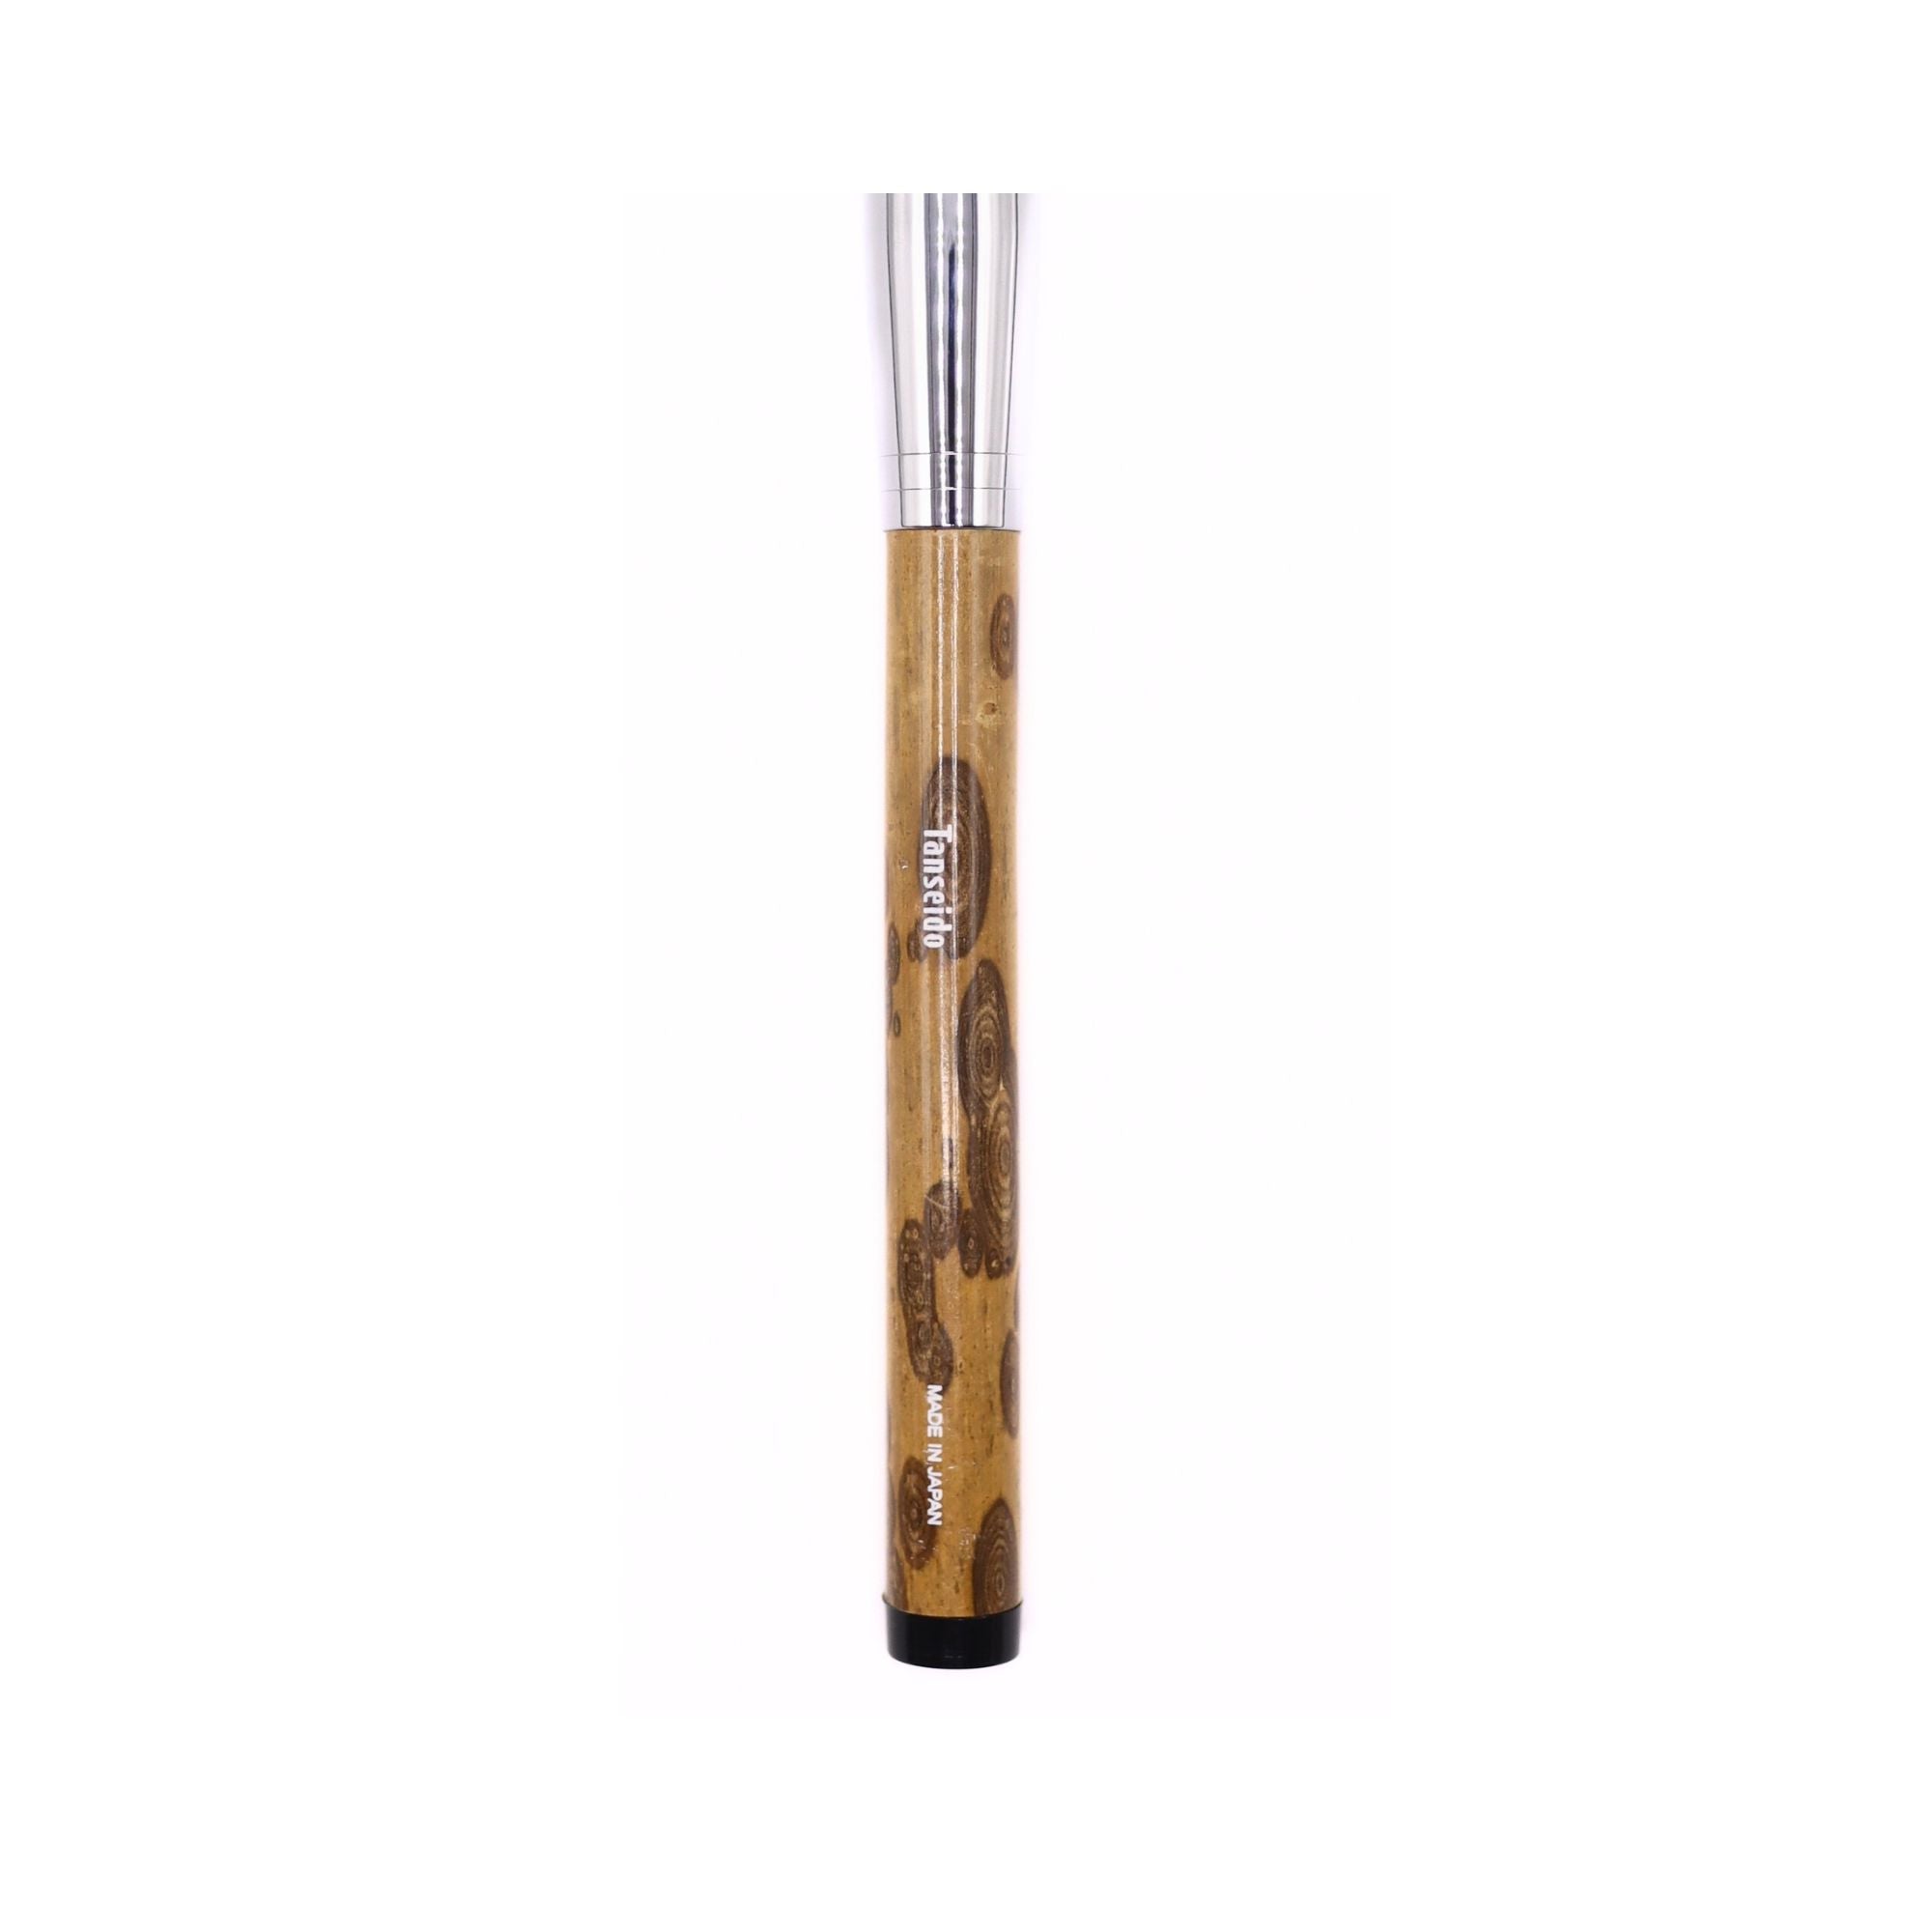 Tanseido Large Eyeshadow Brush, Take 竹 'Bamboo' Series (AQ14TAKE) - Fude Beauty, Japanese Makeup Brushes